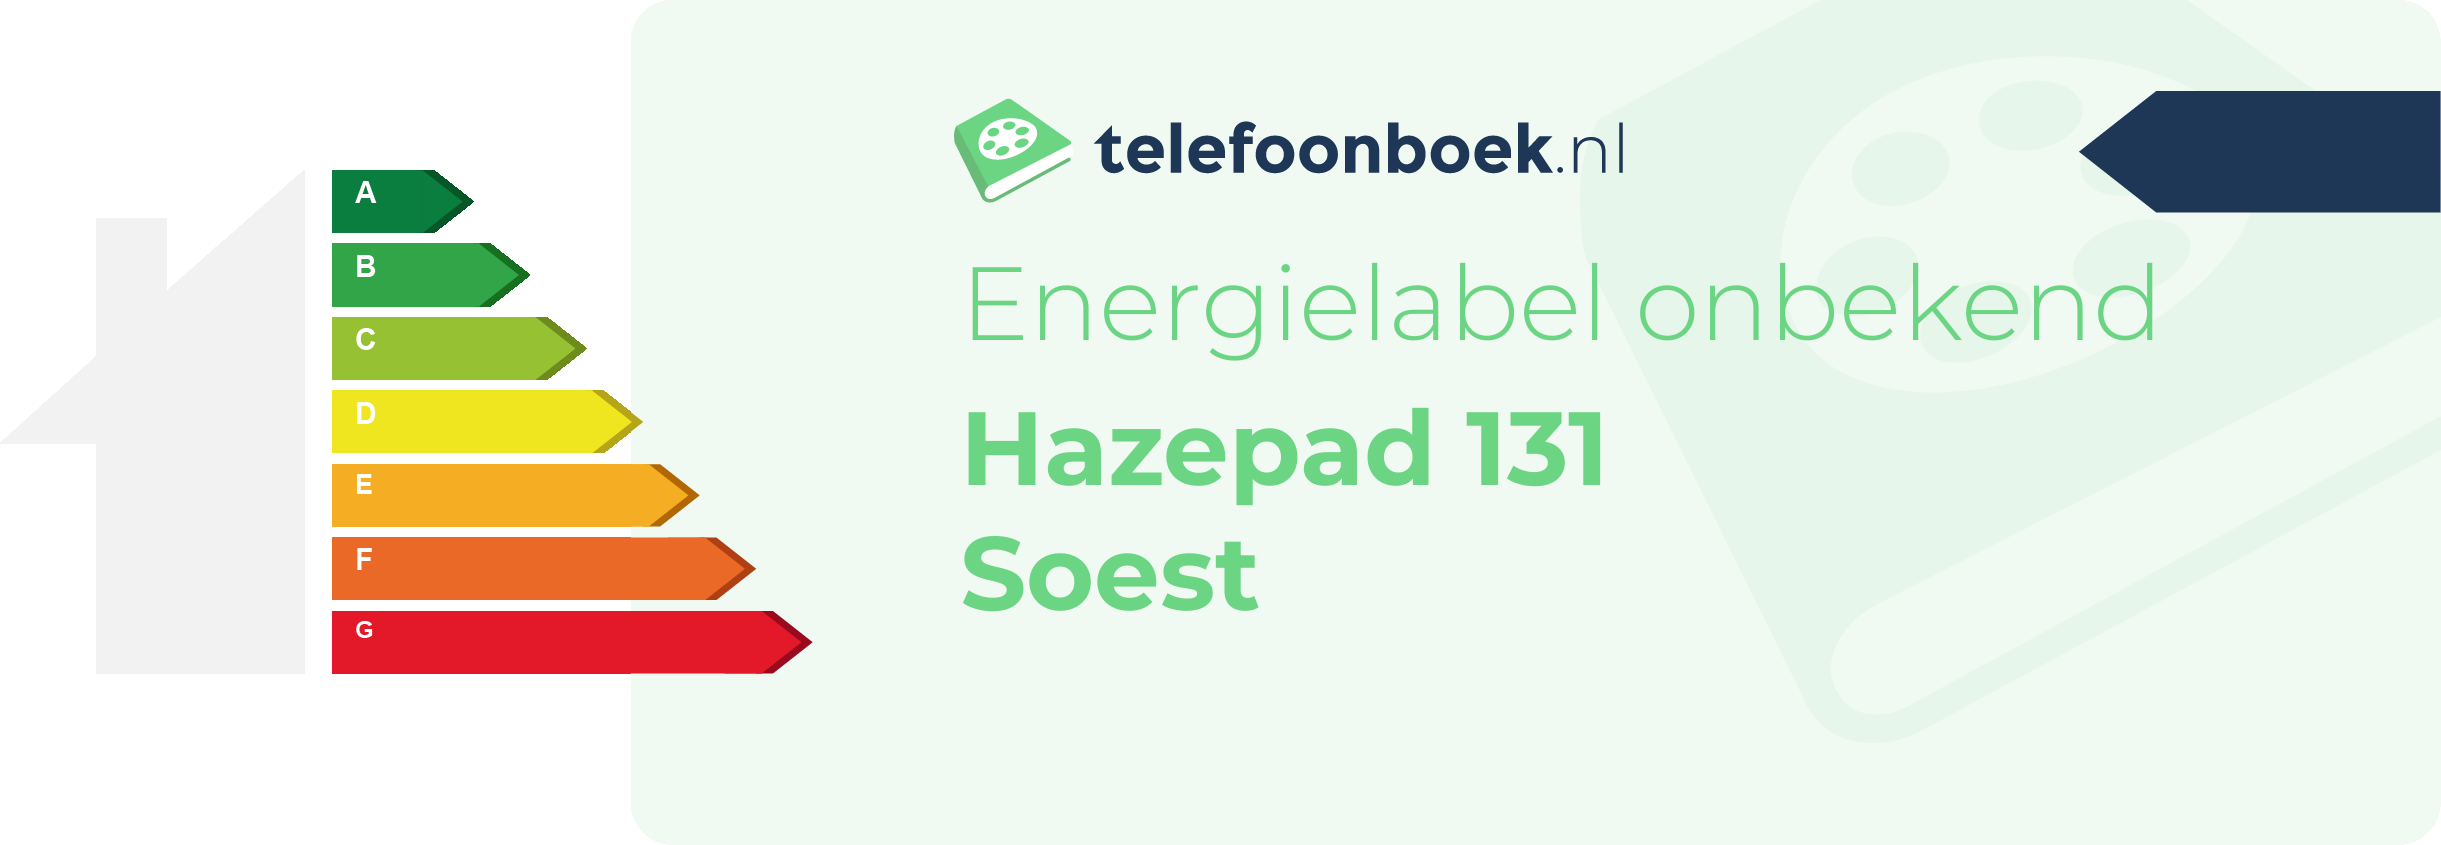 Energielabel Hazepad 131 Soest